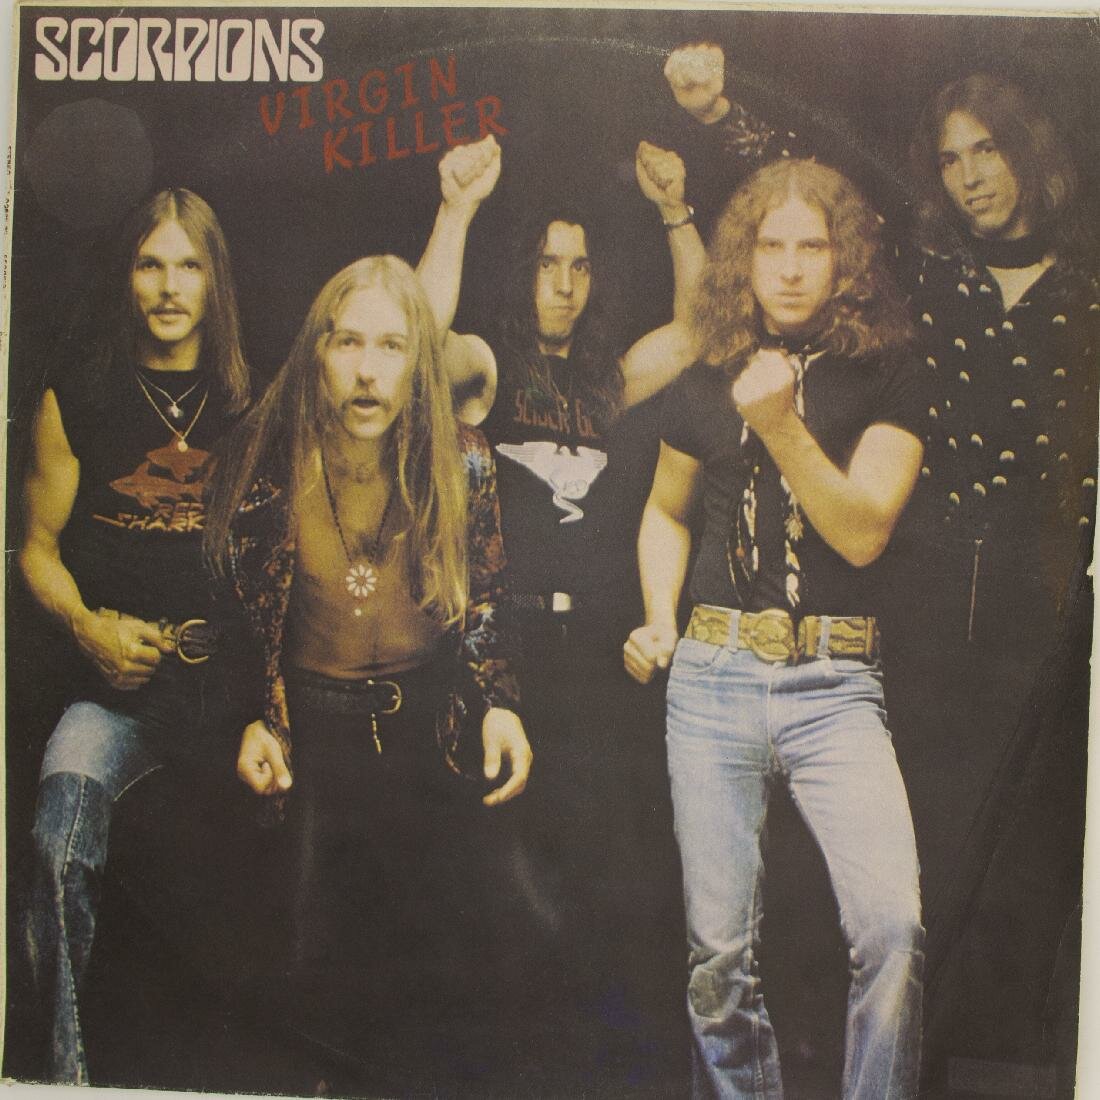 Виниловая пластинка Scorpions - Virgin Killer (LP)